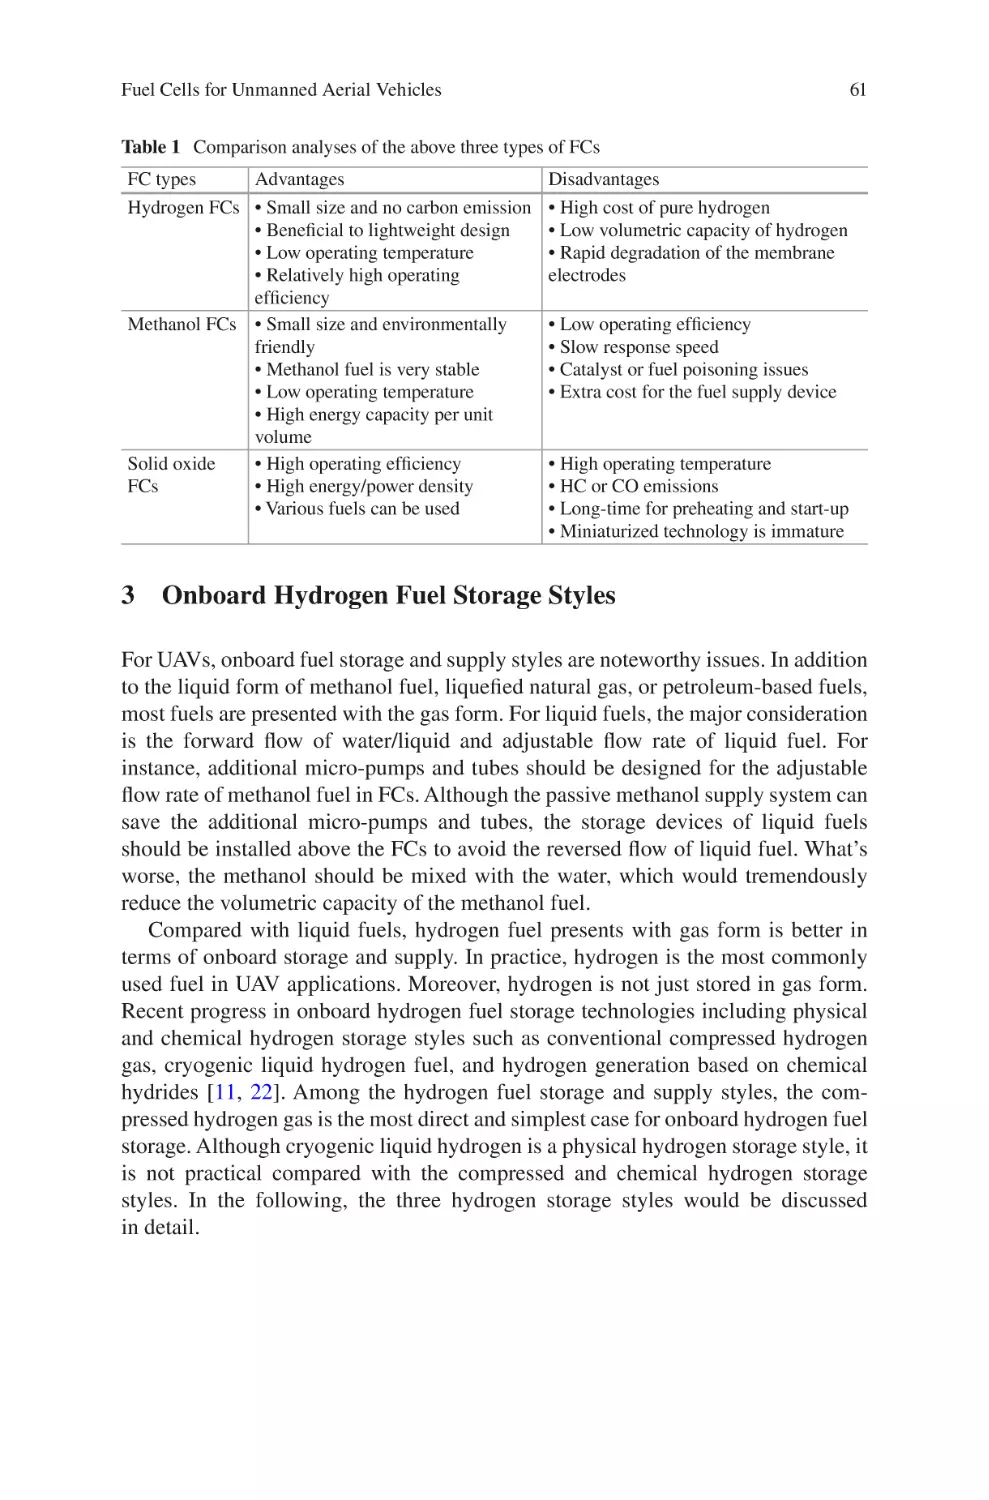 3 Onboard Hydrogen Fuel Storage Styles